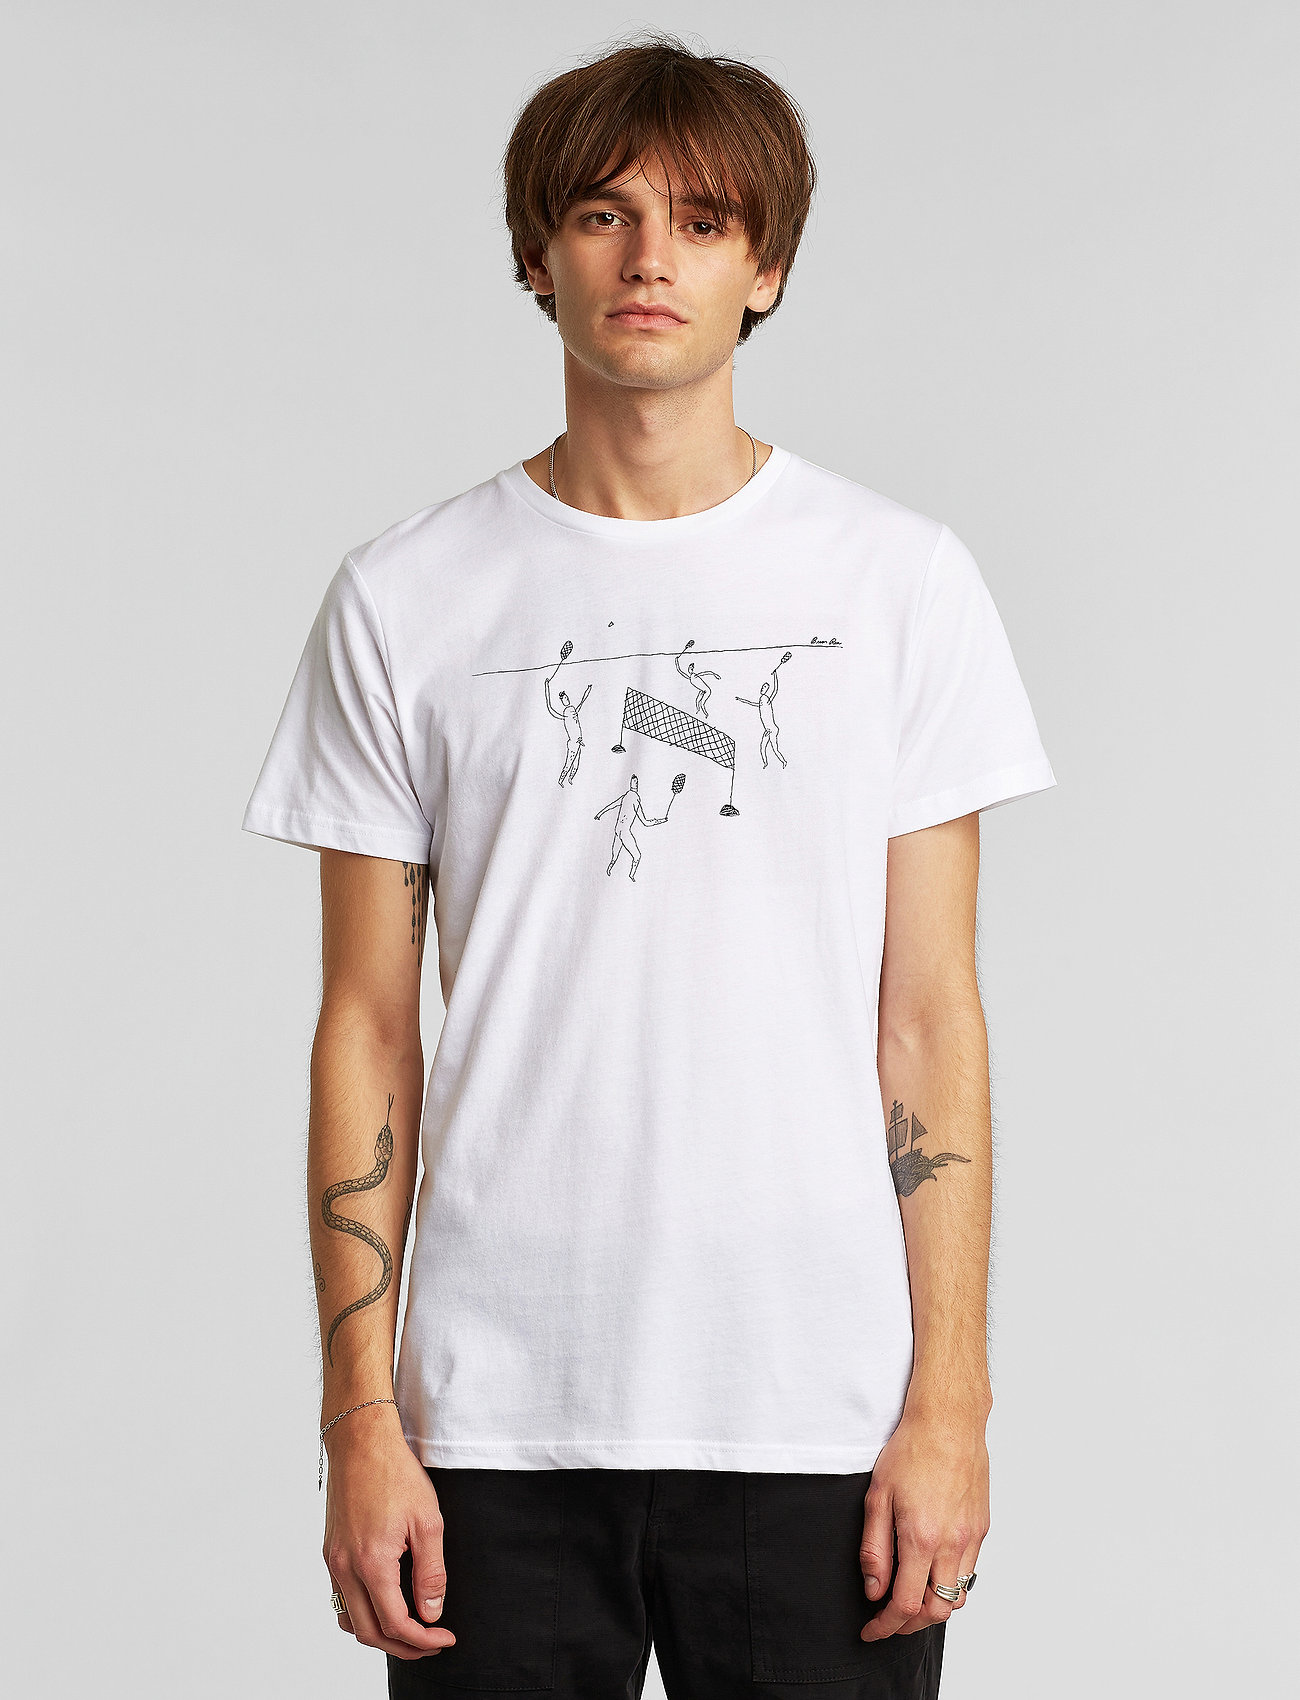 T-shirt Stockholm Badminton White (White/Hvid) - 121 kr |